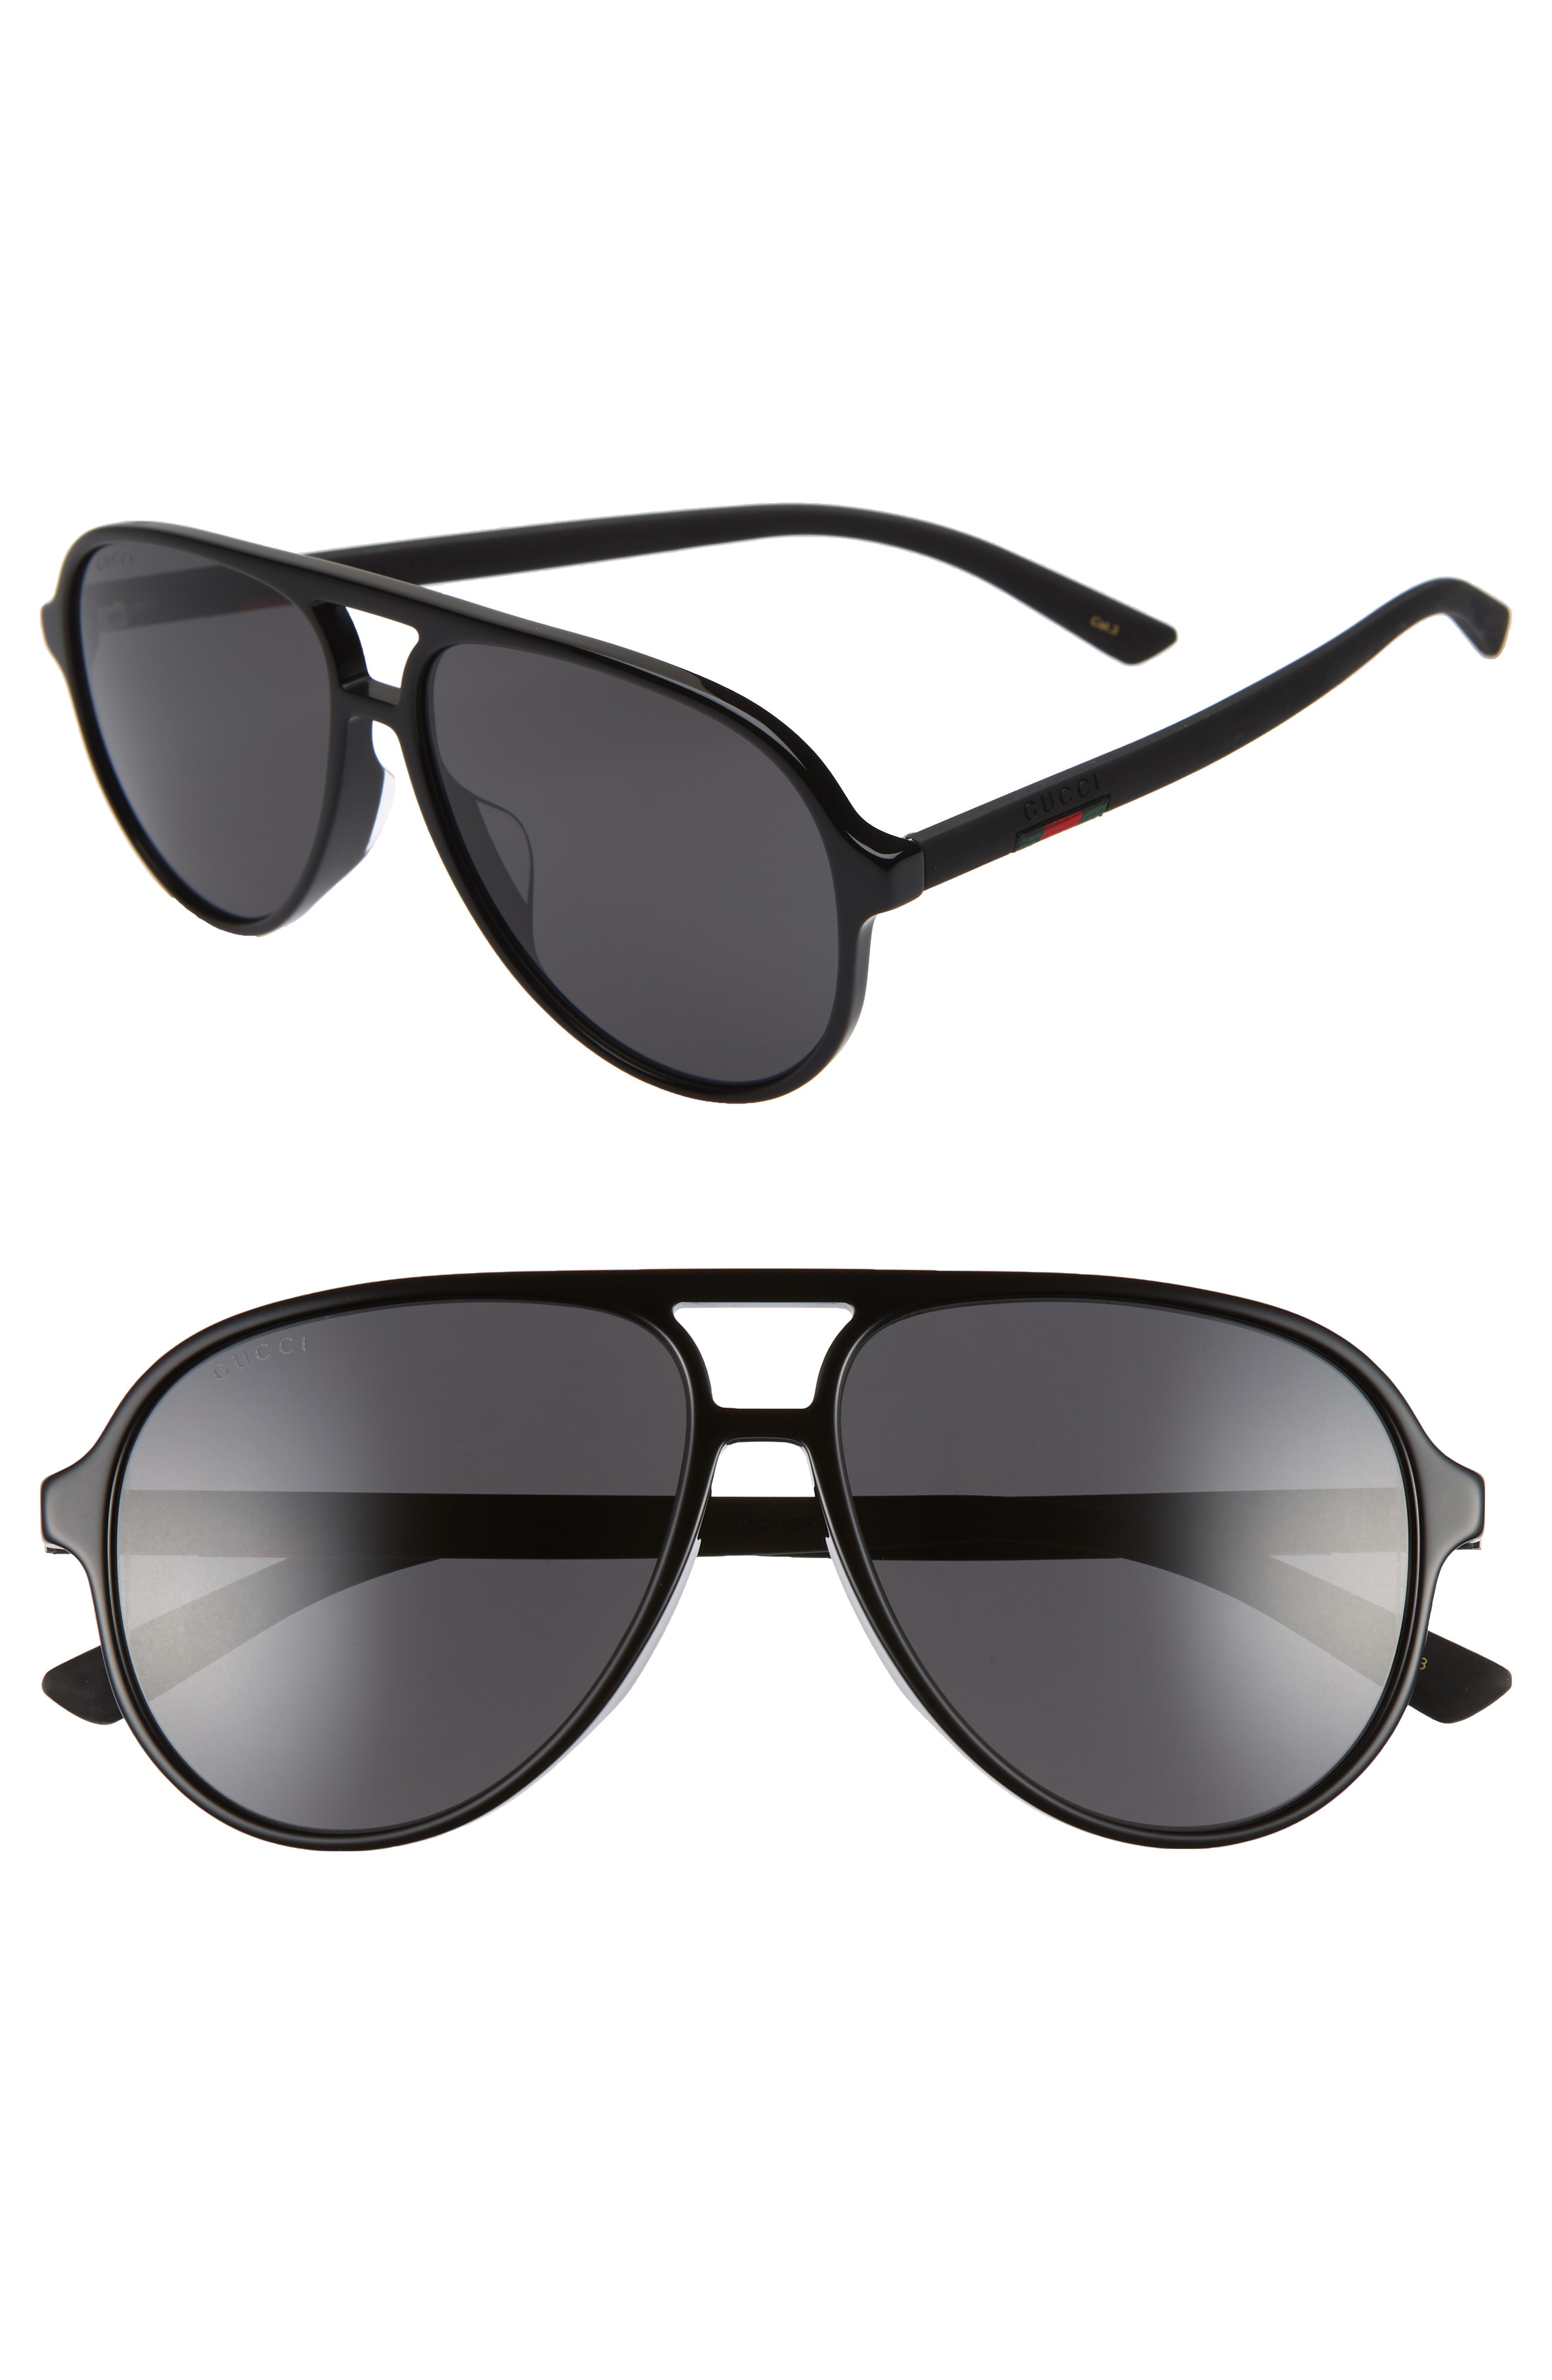 Mens Gucci 60mm Aviator Sunglasses Black The Fashionisto 